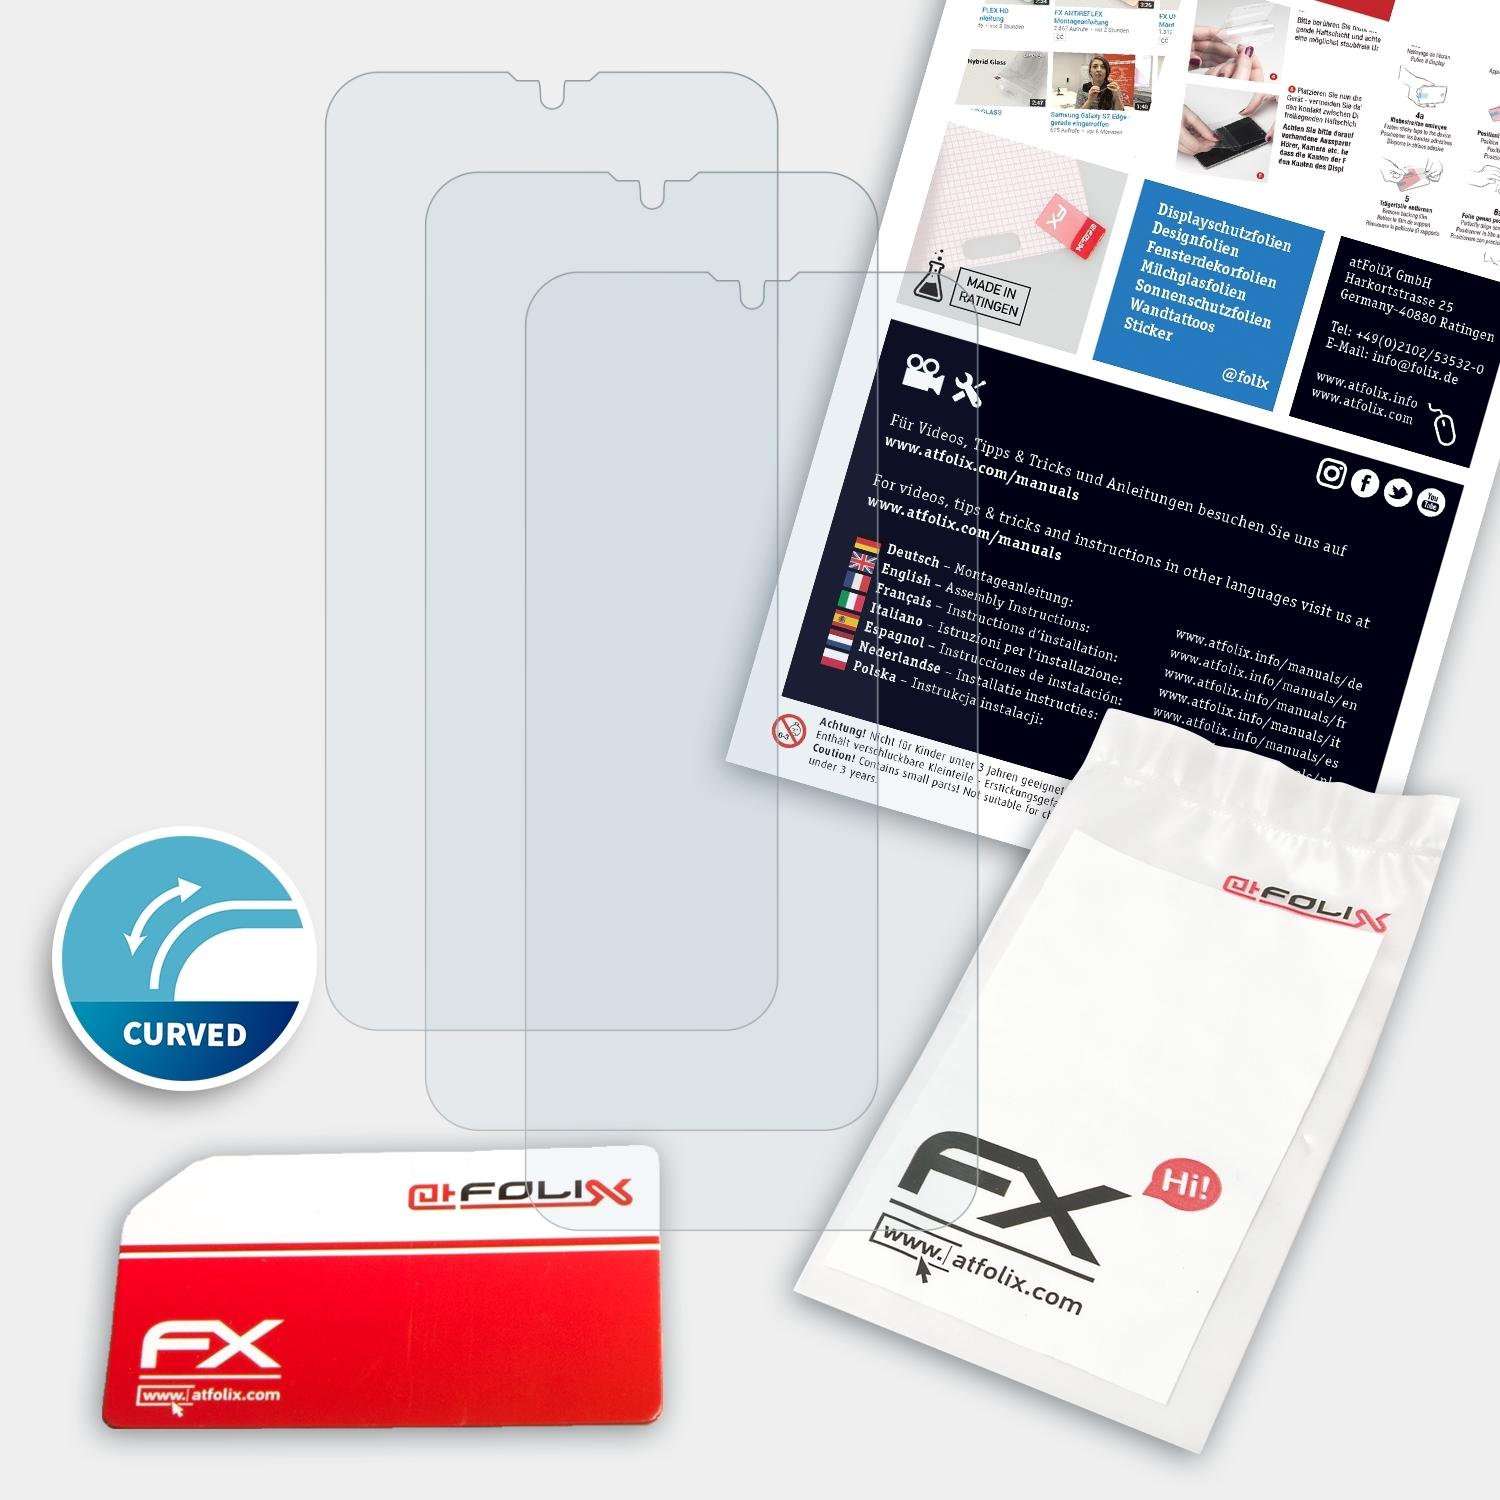 FX-ActiFleX ATFOLIX Displayschutz(für 3x A7) Oppo